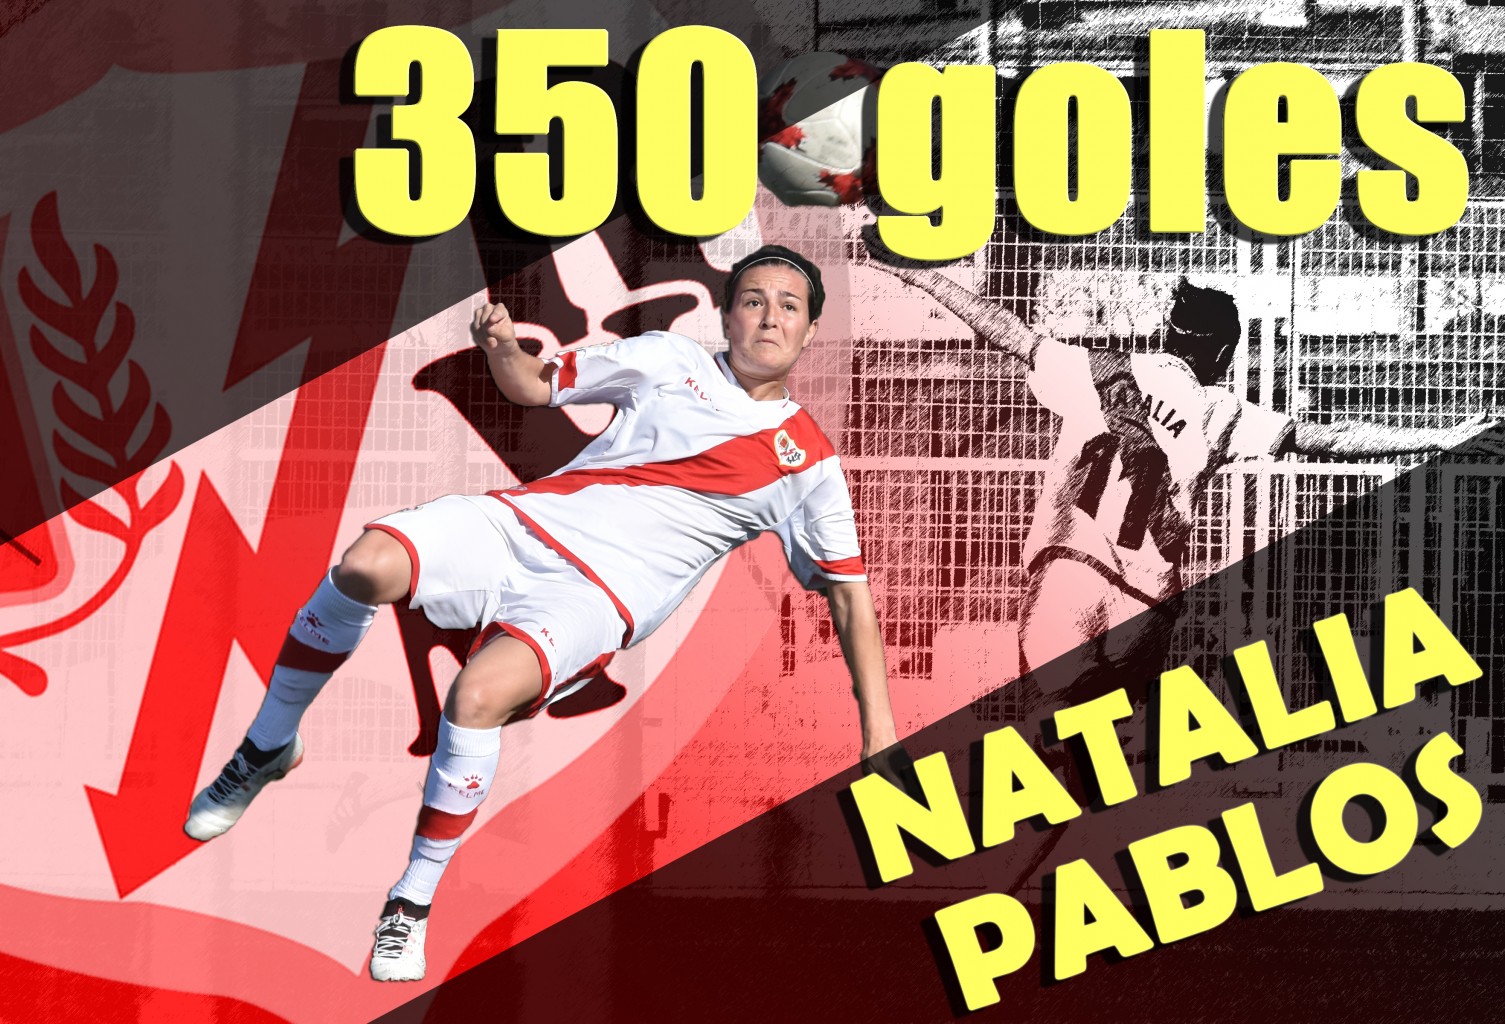 Natalia Pablos goleadora